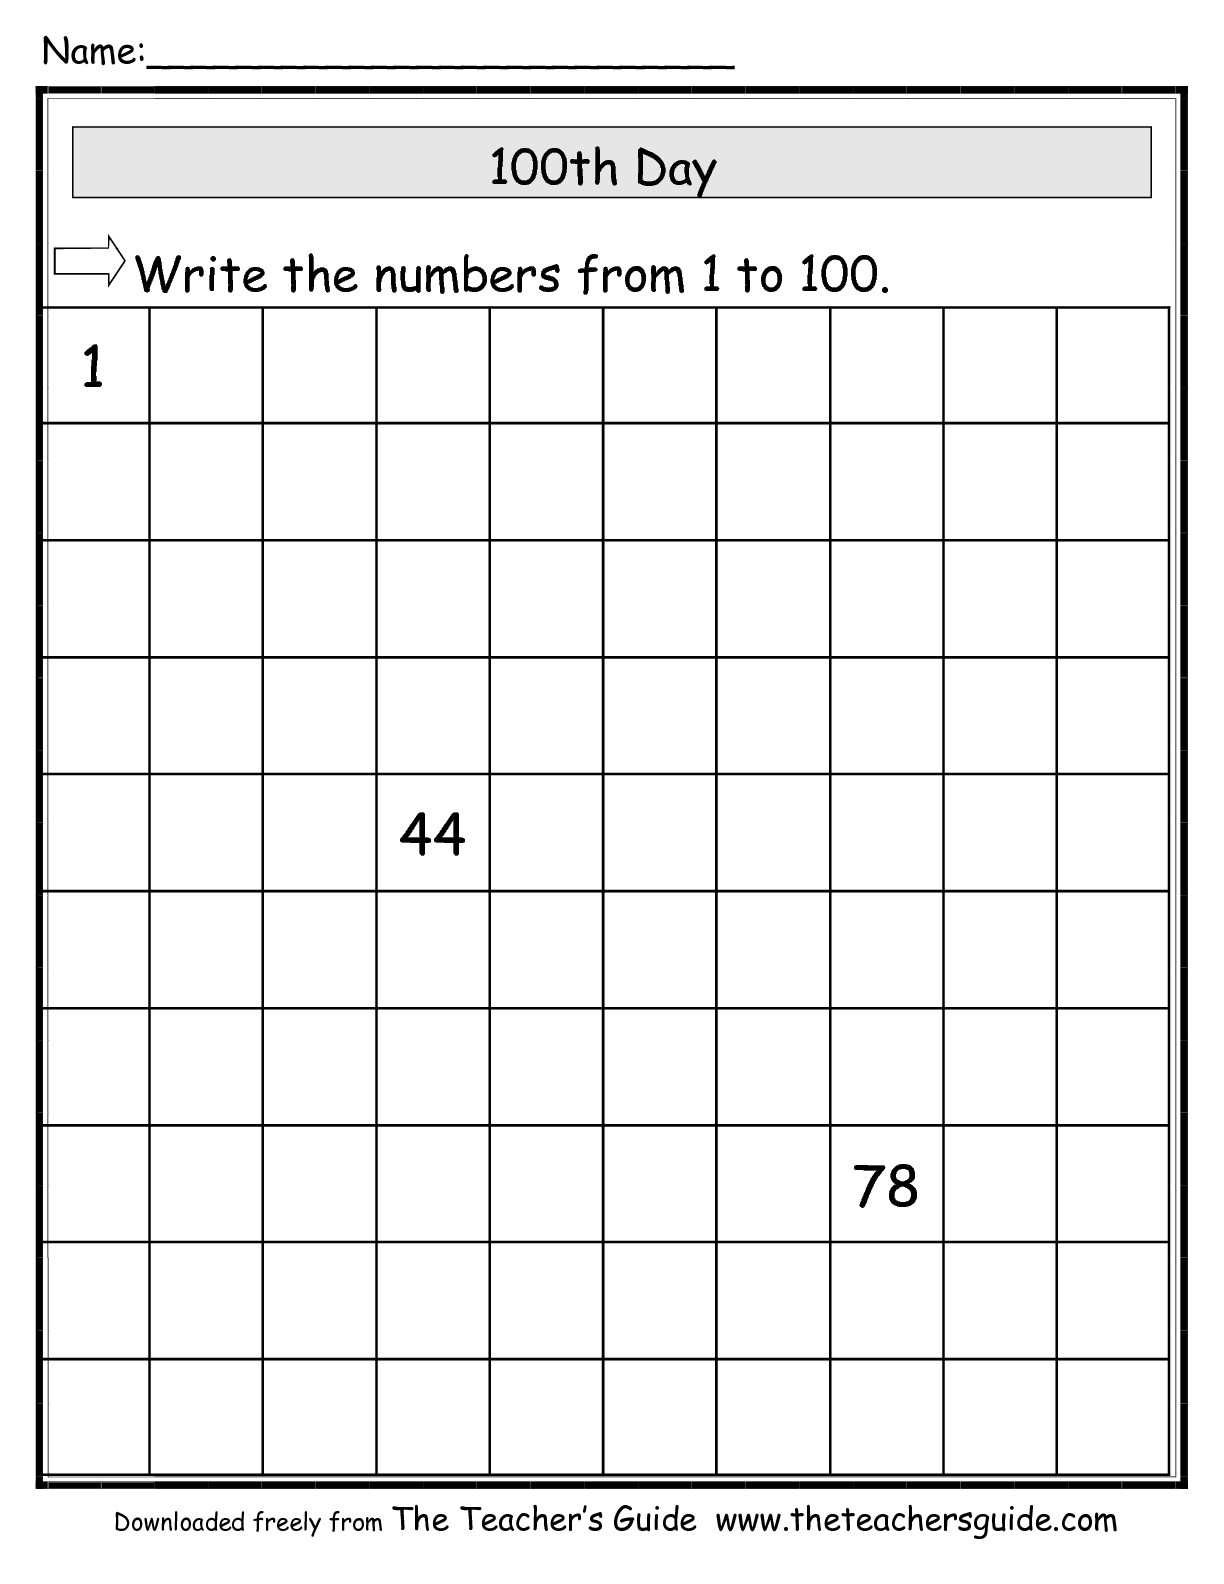 15-best-images-of-fill-missing-number-worksheets-missing-number-addition-worksheets-3-factor